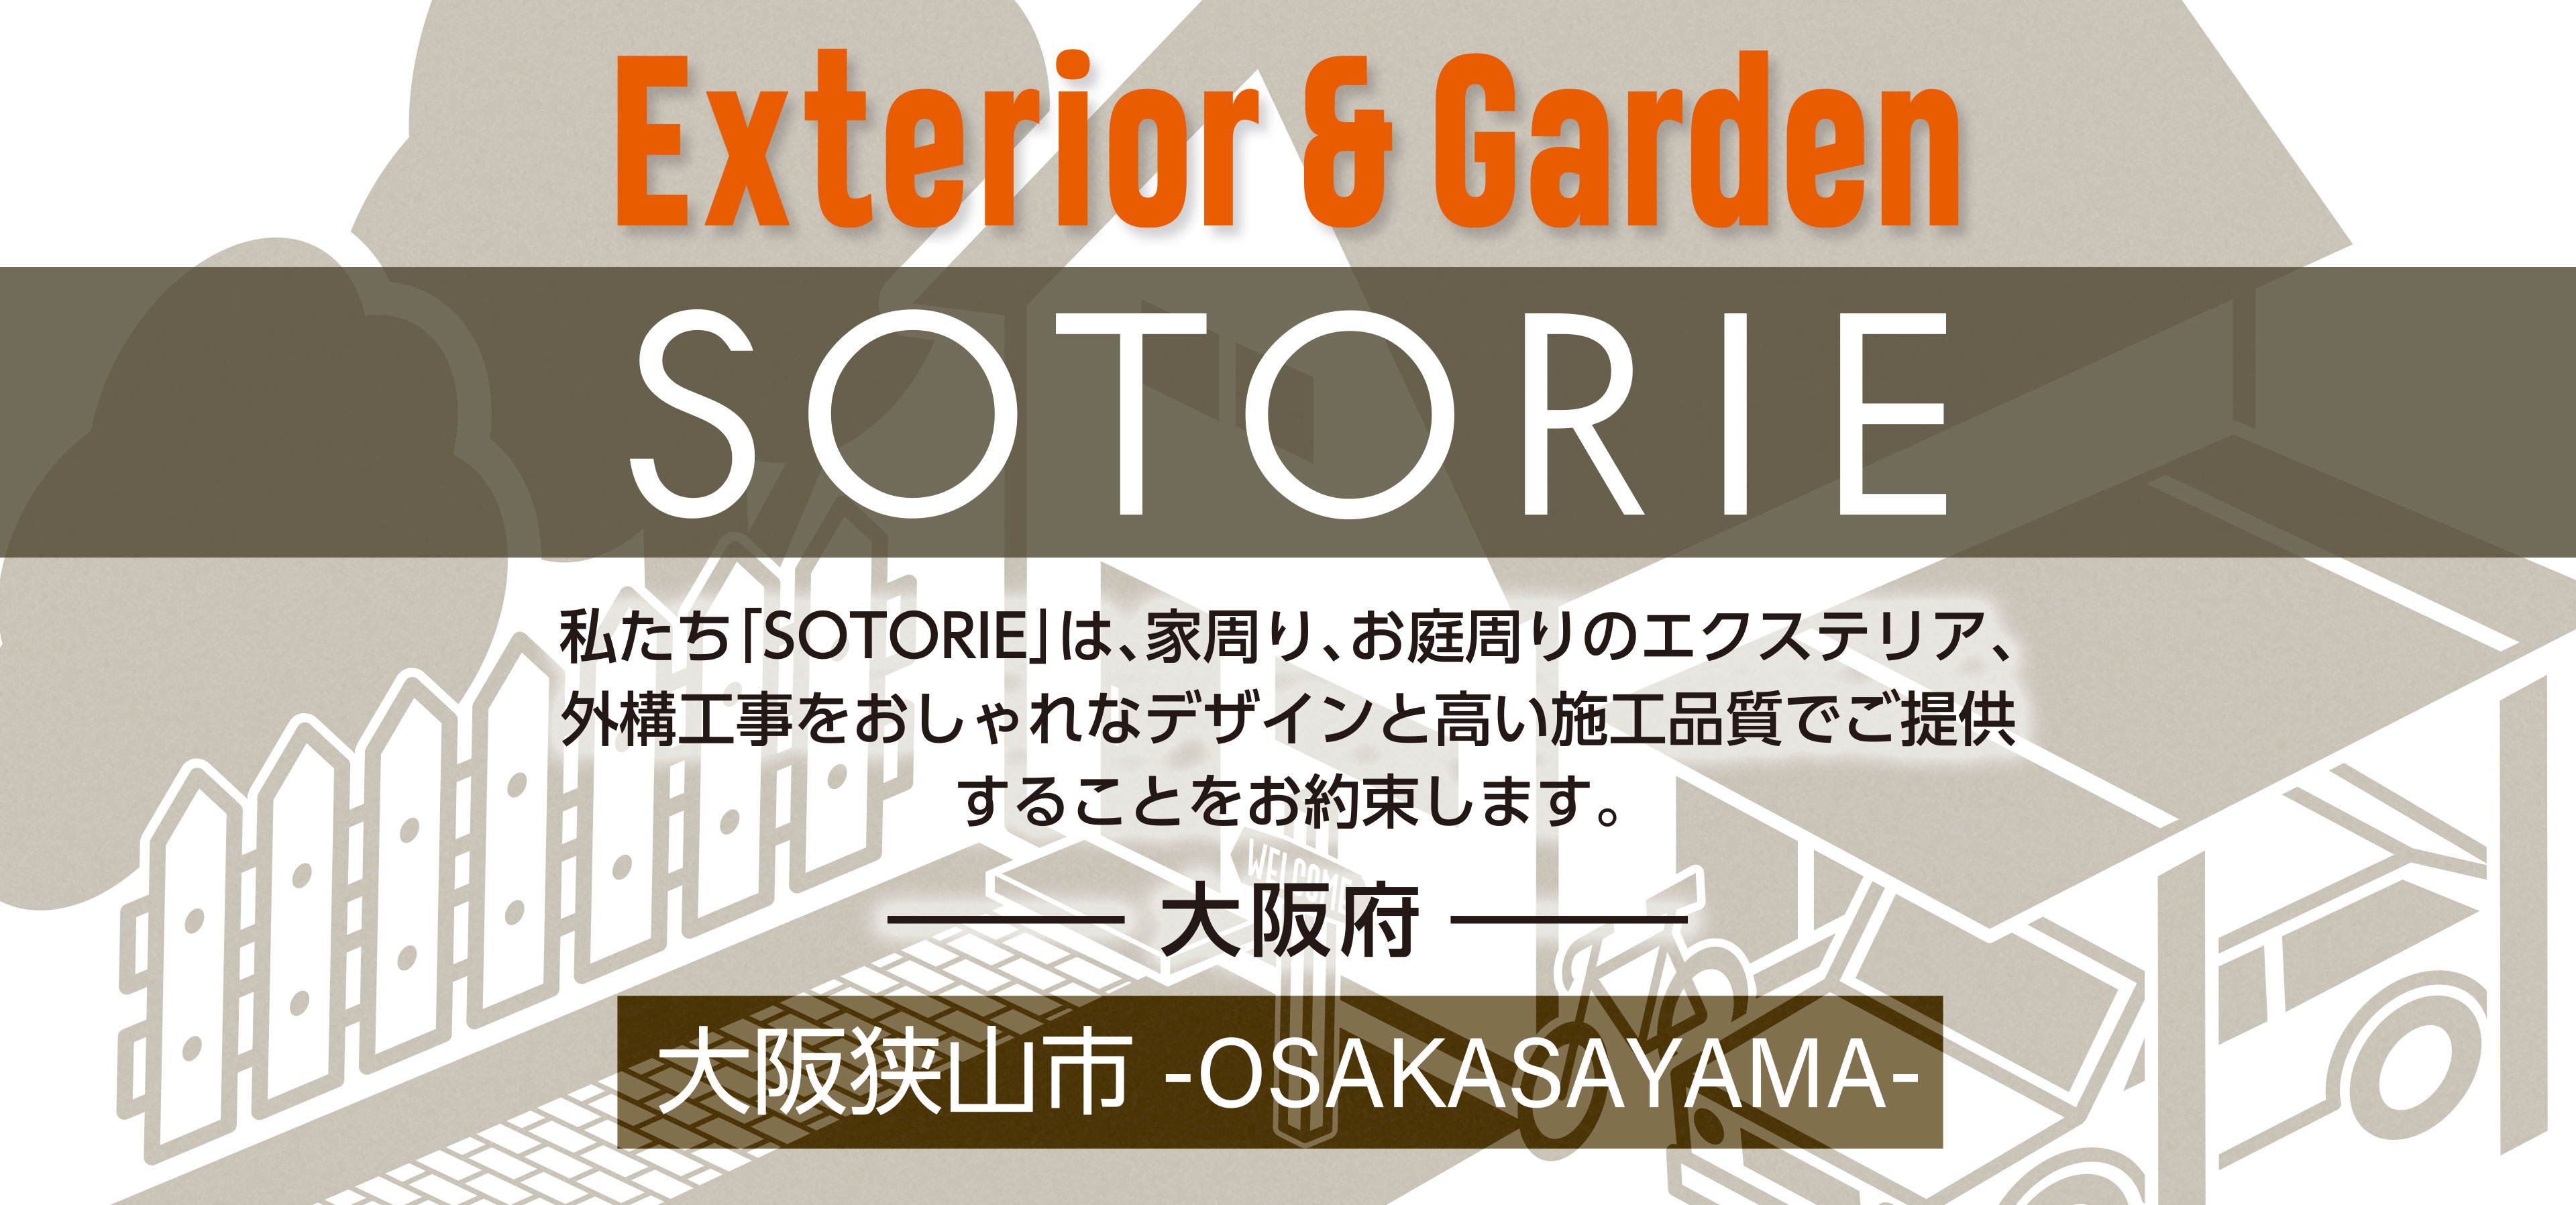 ソトリエ大阪狭山市では、家周りと庭周りの外構、エクステリア工事をおしゃれなデザインと高い施工品質でご提供することをお約束します。